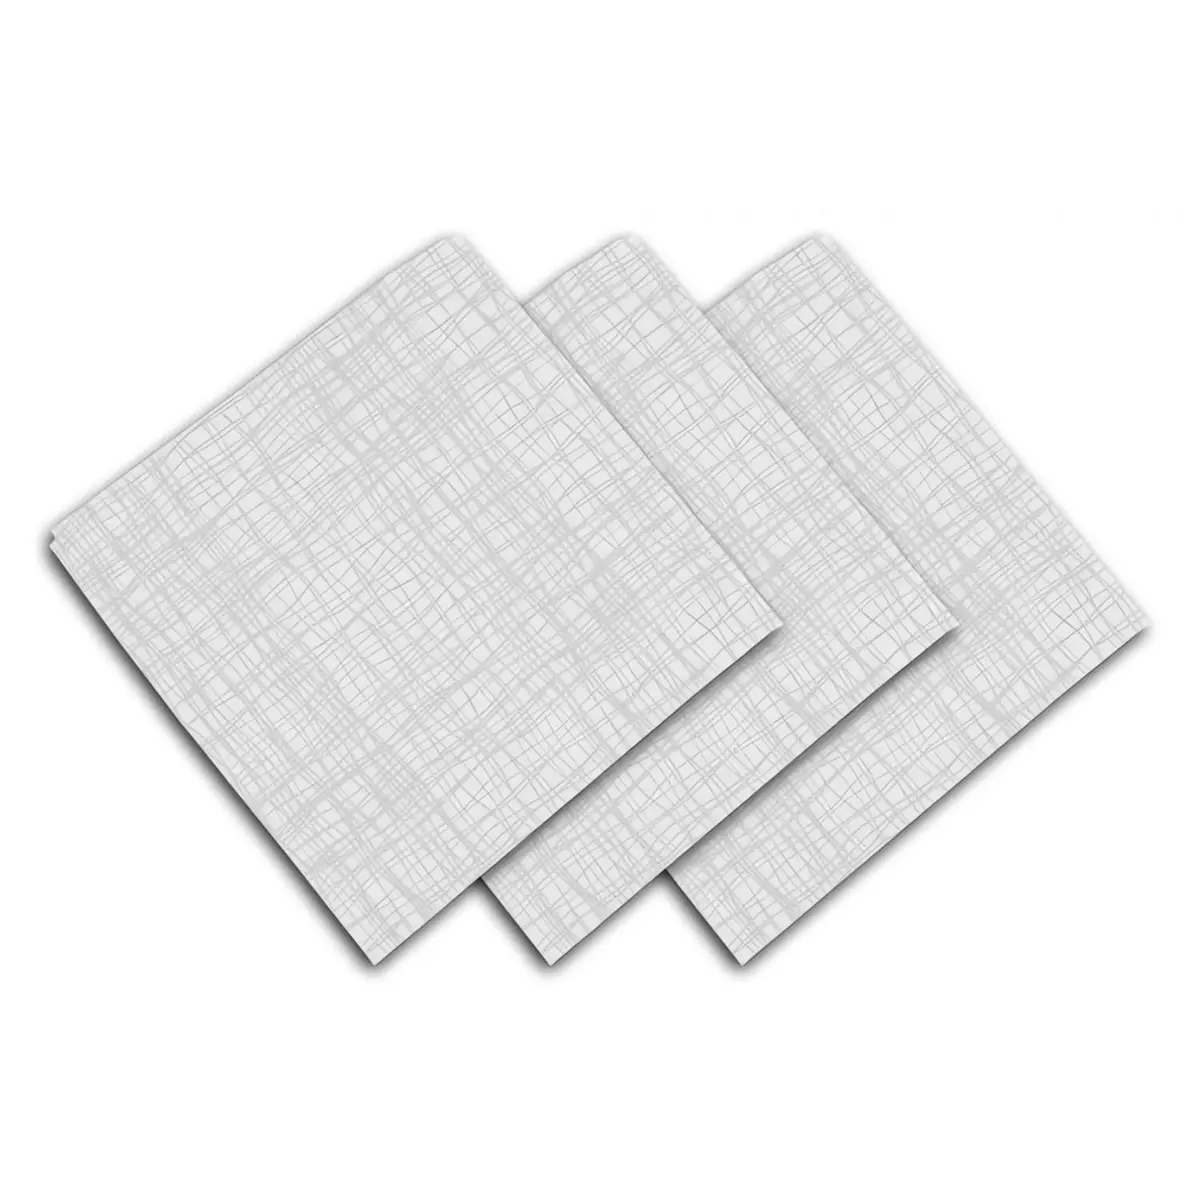 SOLEIL D'OCRE Lot de 3 serviettes de table 45x45 cm GALAXY blanc, par Soleil d'ocre